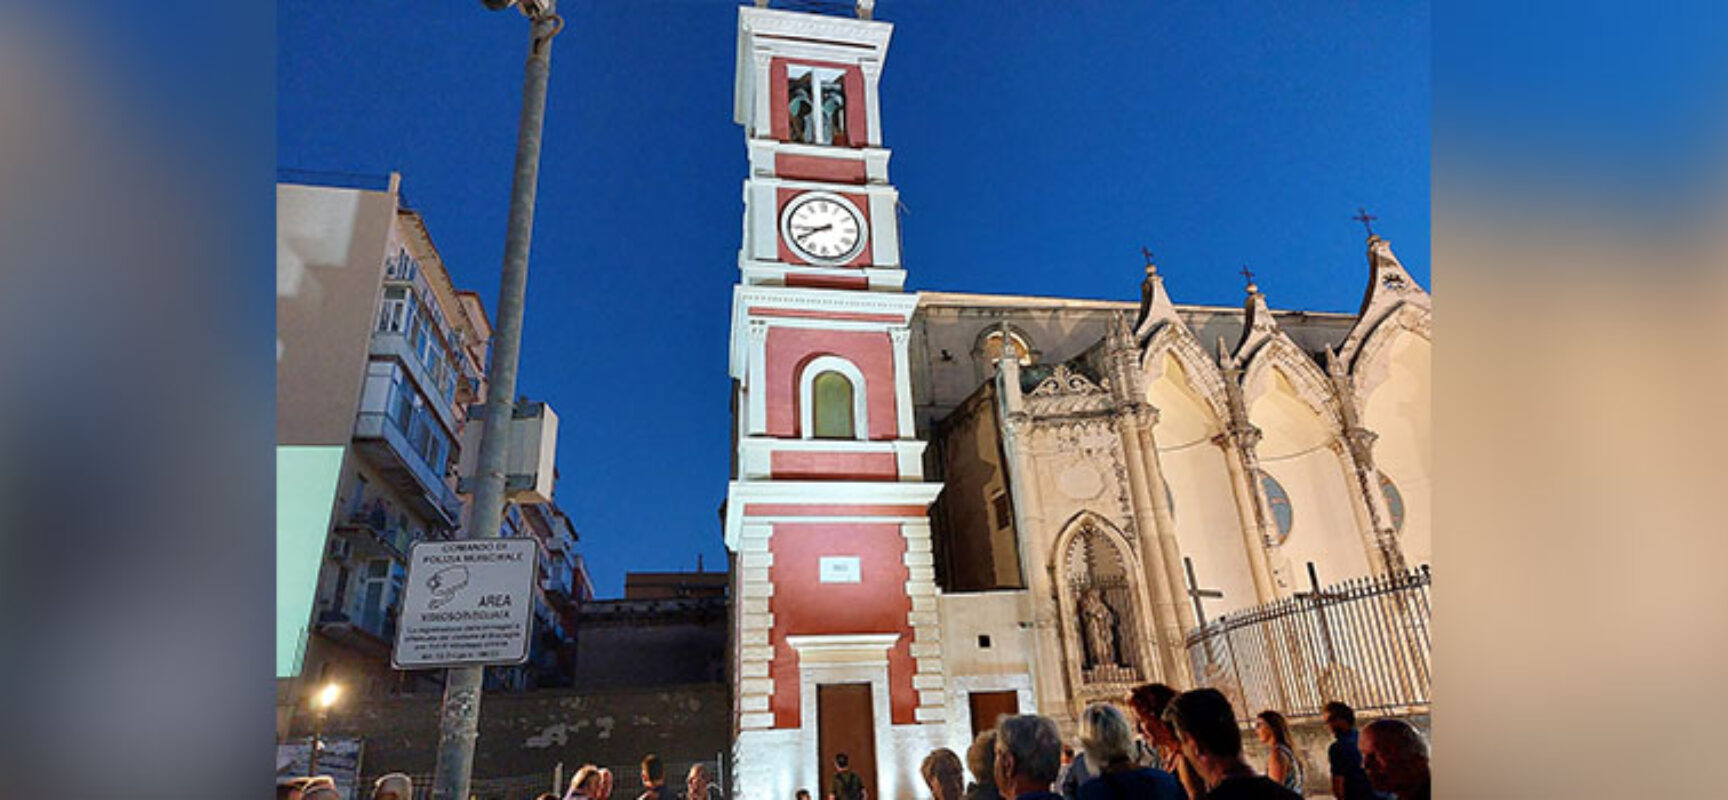 Riconsegnata a Bisceglie la torre civica dell’orologio dopo il restauro / FOTO